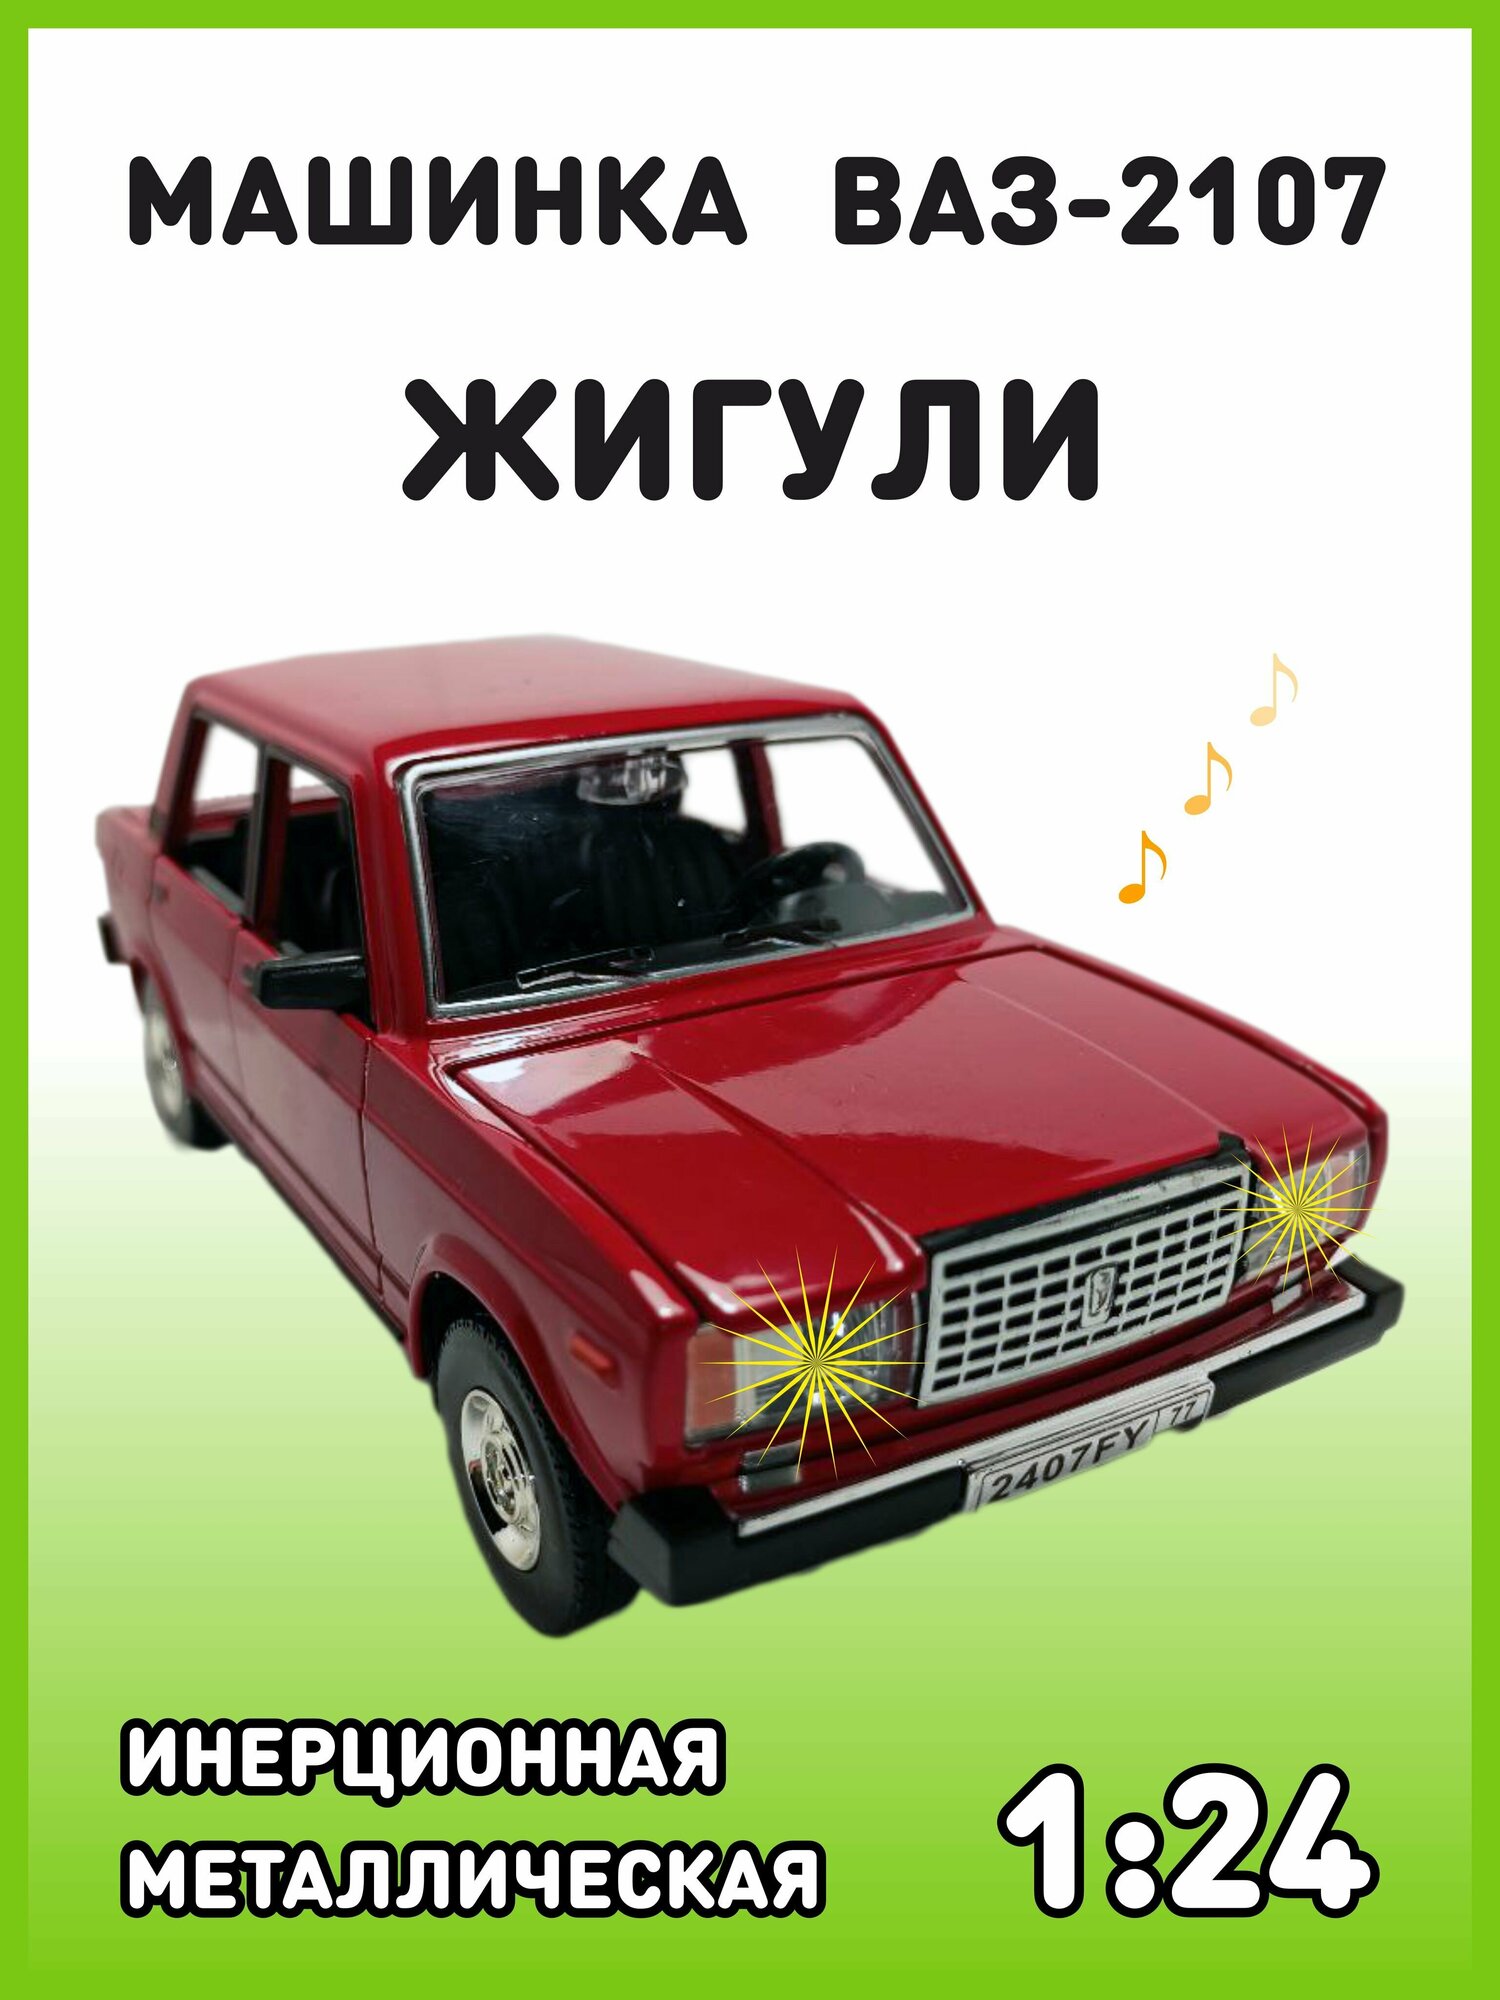 Модель автомобиля Жигули ВАЗ 2107 коллекционная металлическая игрушка масштаб 1:24 красный